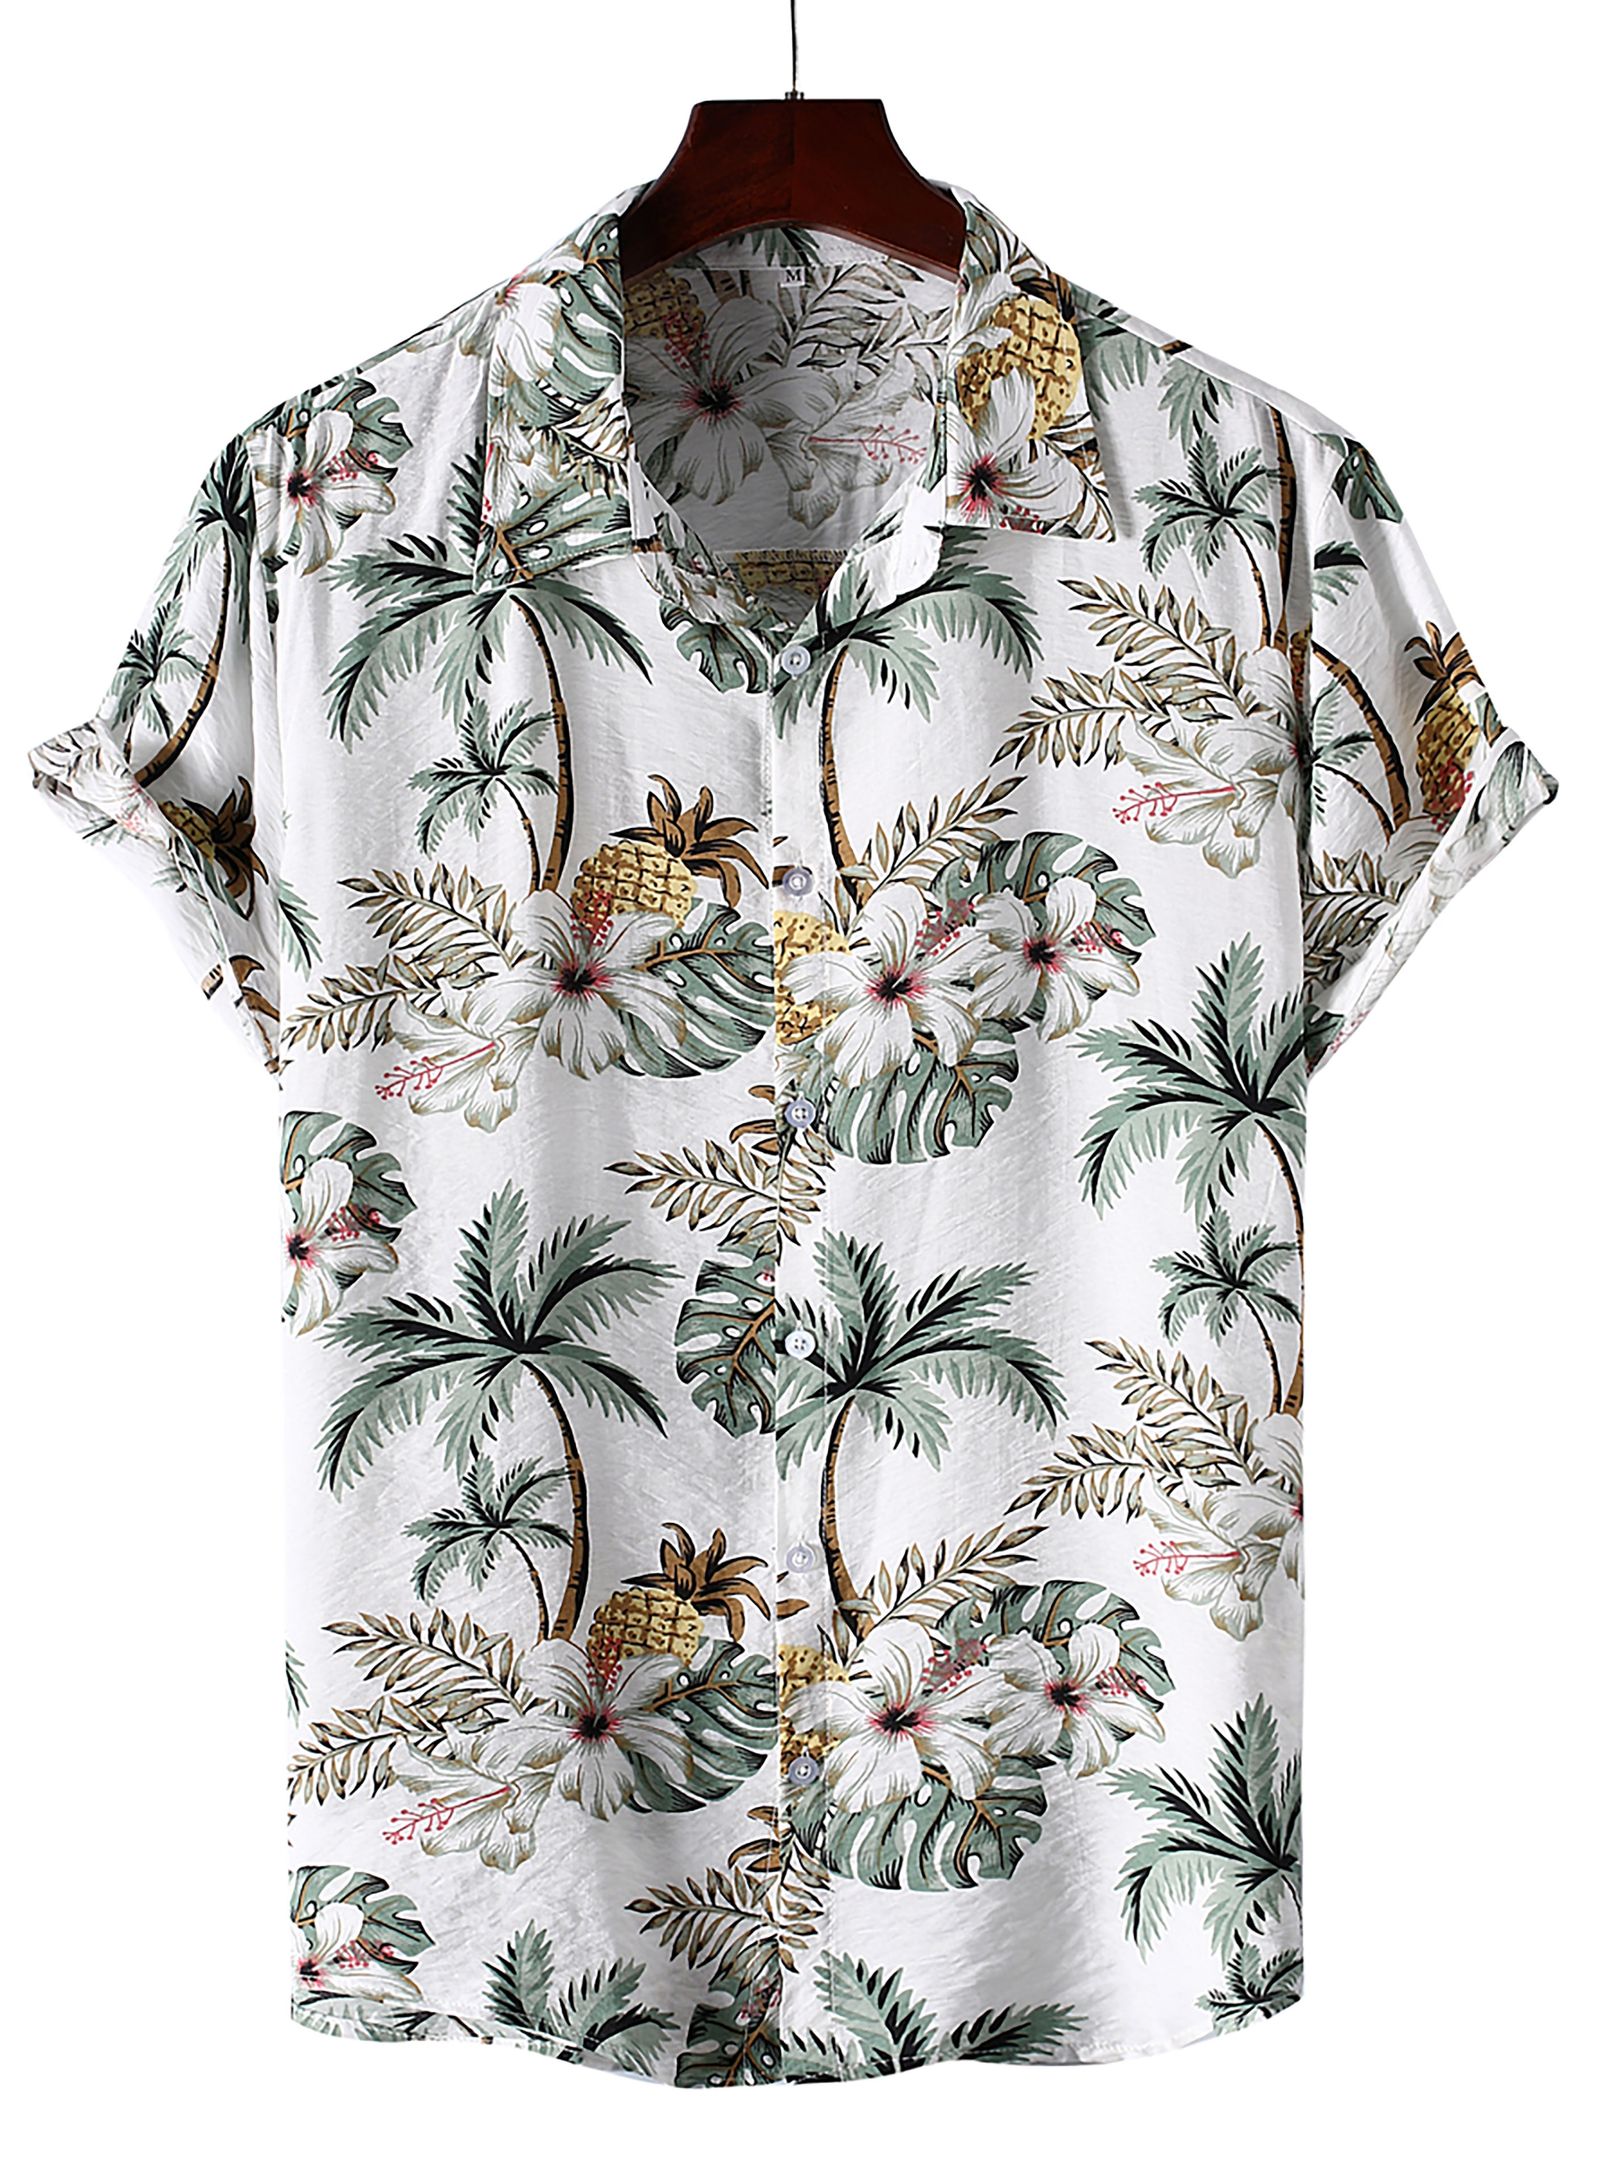 Men's Tropical Floral Print Holiday Casual Hawaiian Shirt